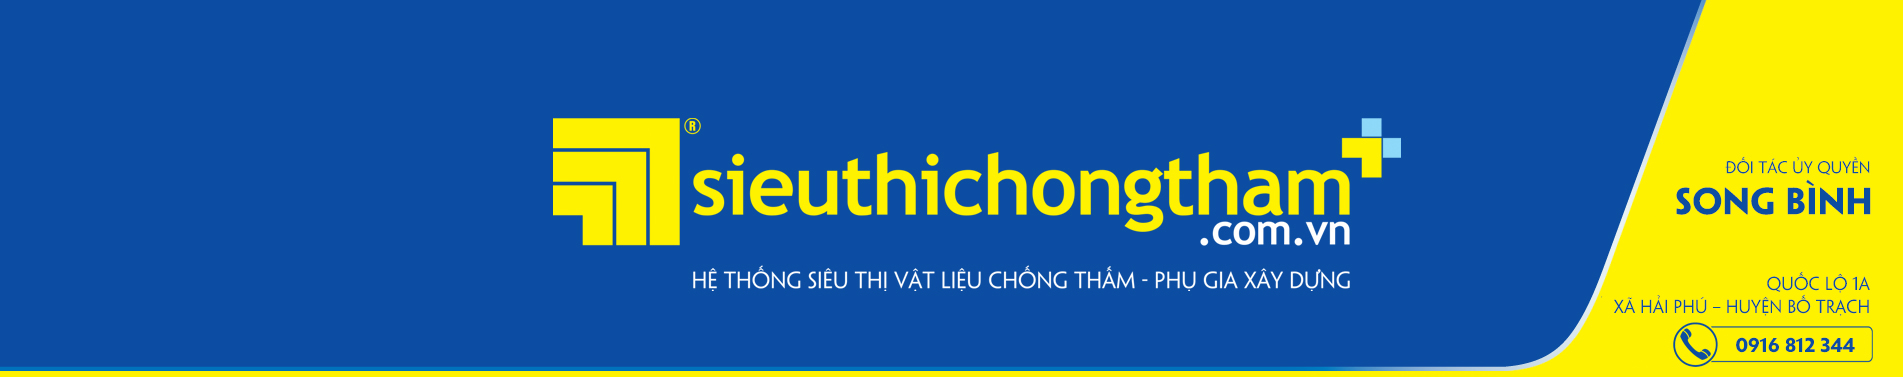 Song Binh Banner